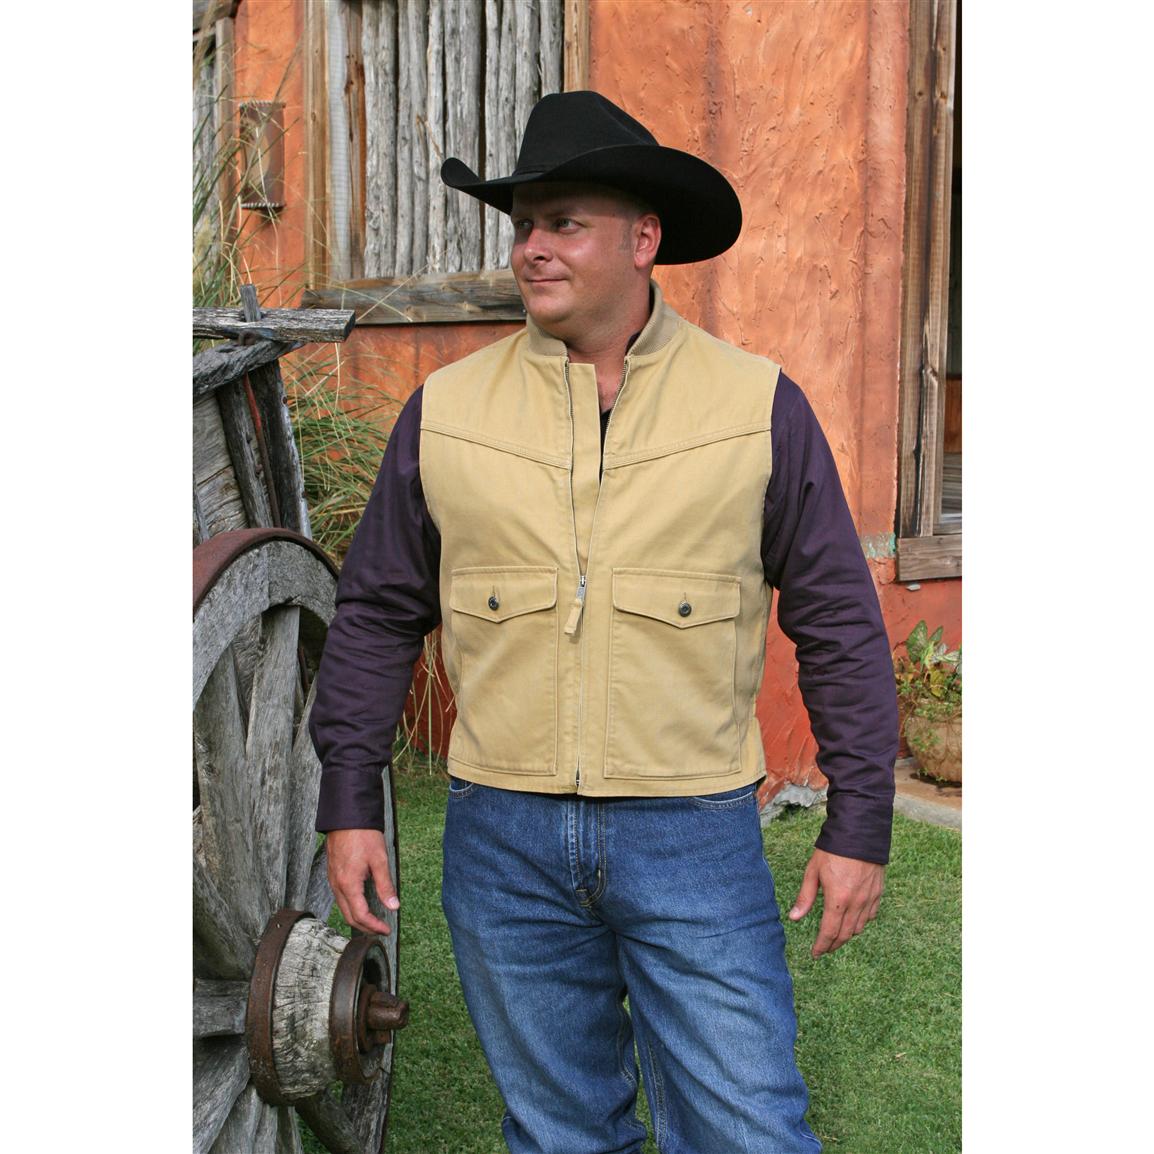 Walls® Ranchwear Ranch Vest - 127045, Vests at Sportsman's Guide